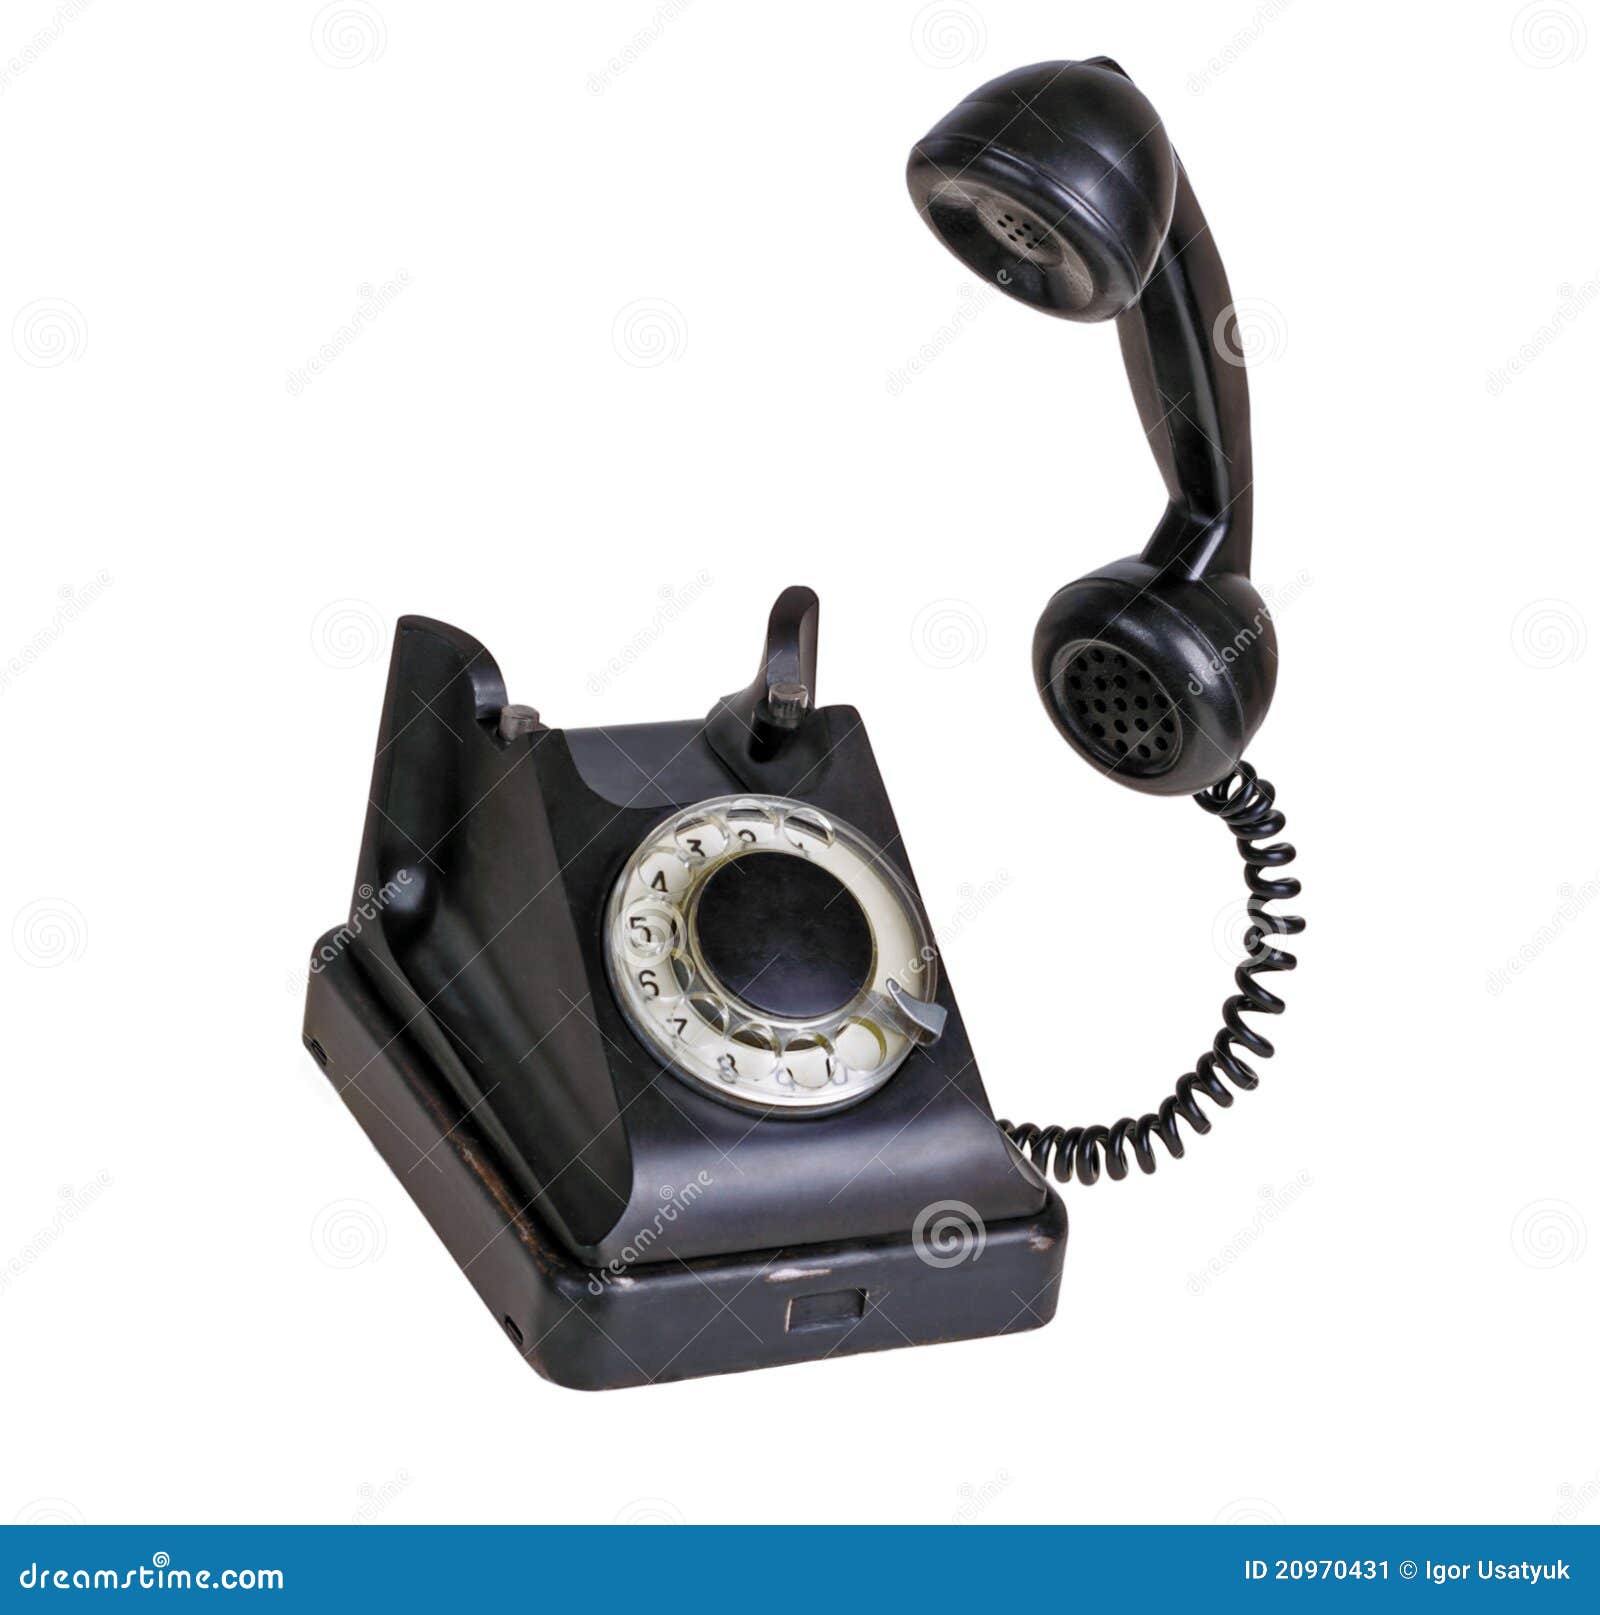 Фото по запросу Старинный телефон